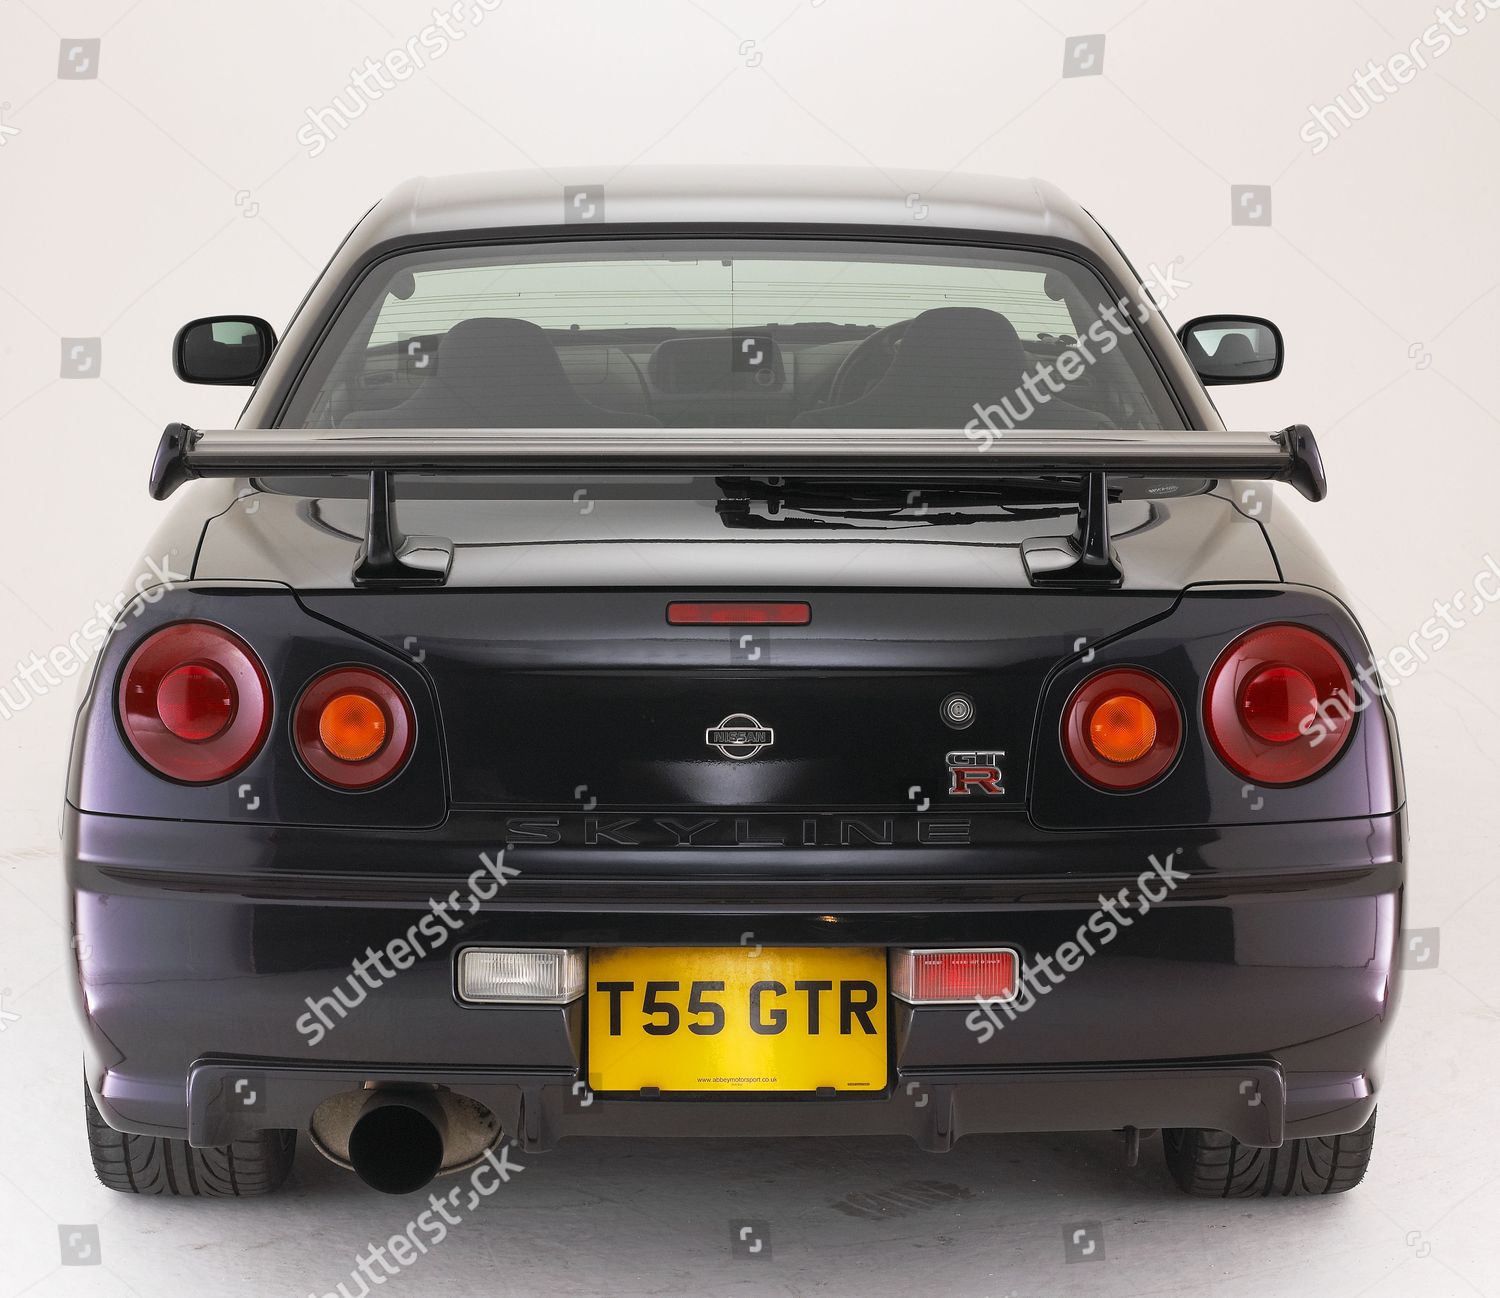 1999 Nissan Skyline Gtr34 Foto Editorial En Stock Imagen En Stock Shutterstock